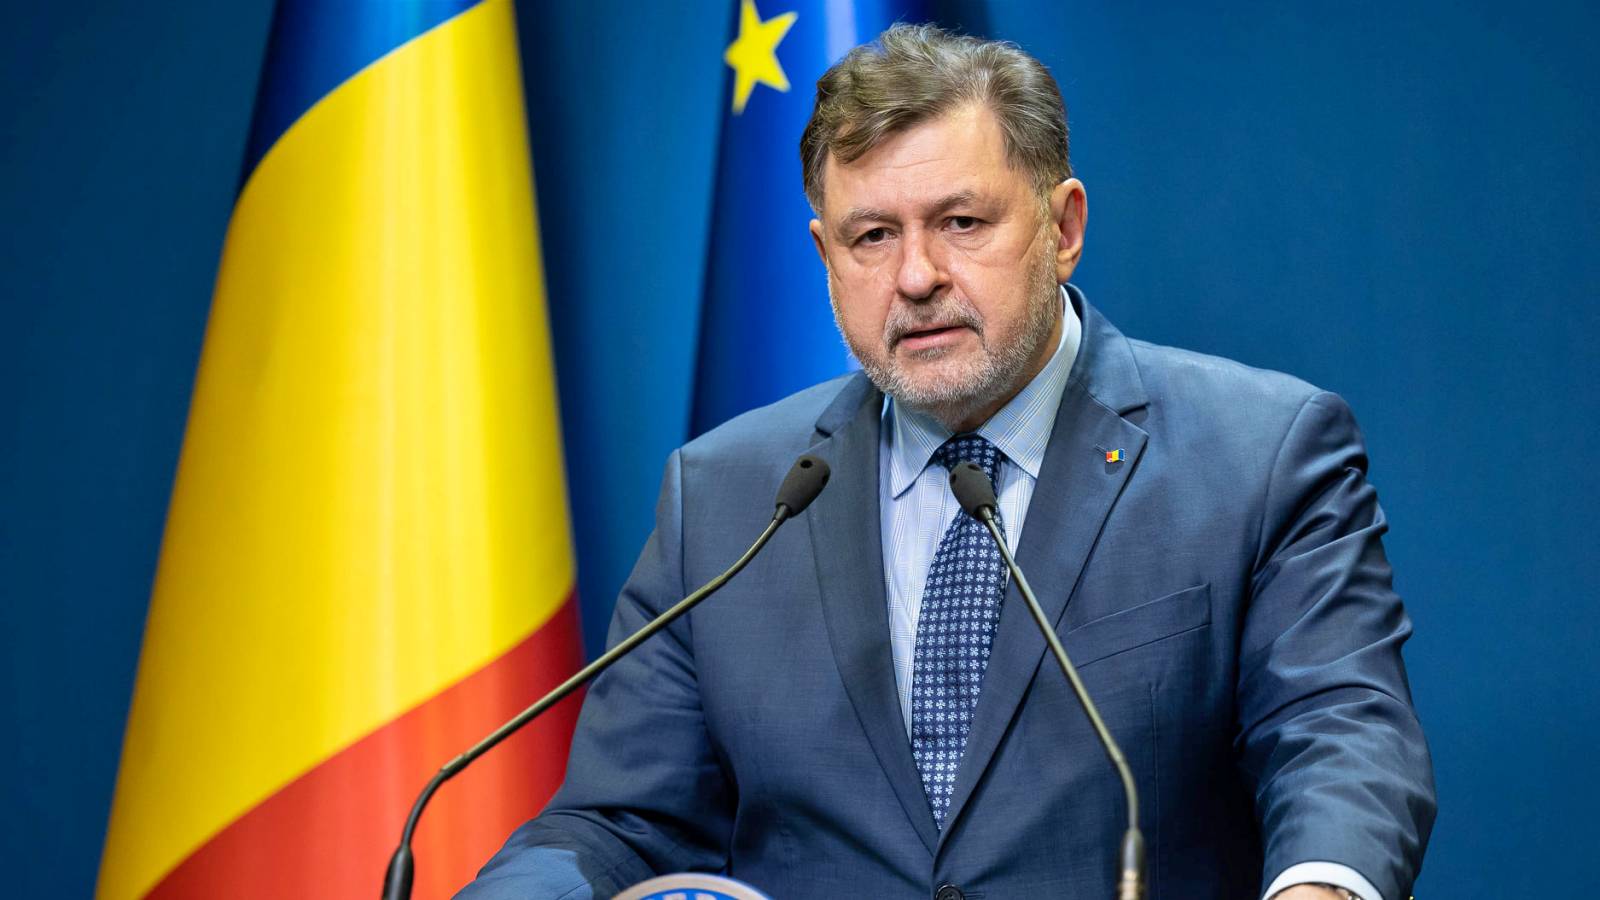 Minister van Volksgezondheid Last Minute Verklaring van onmiddellijke noodzaak Maatregelen Roemenië